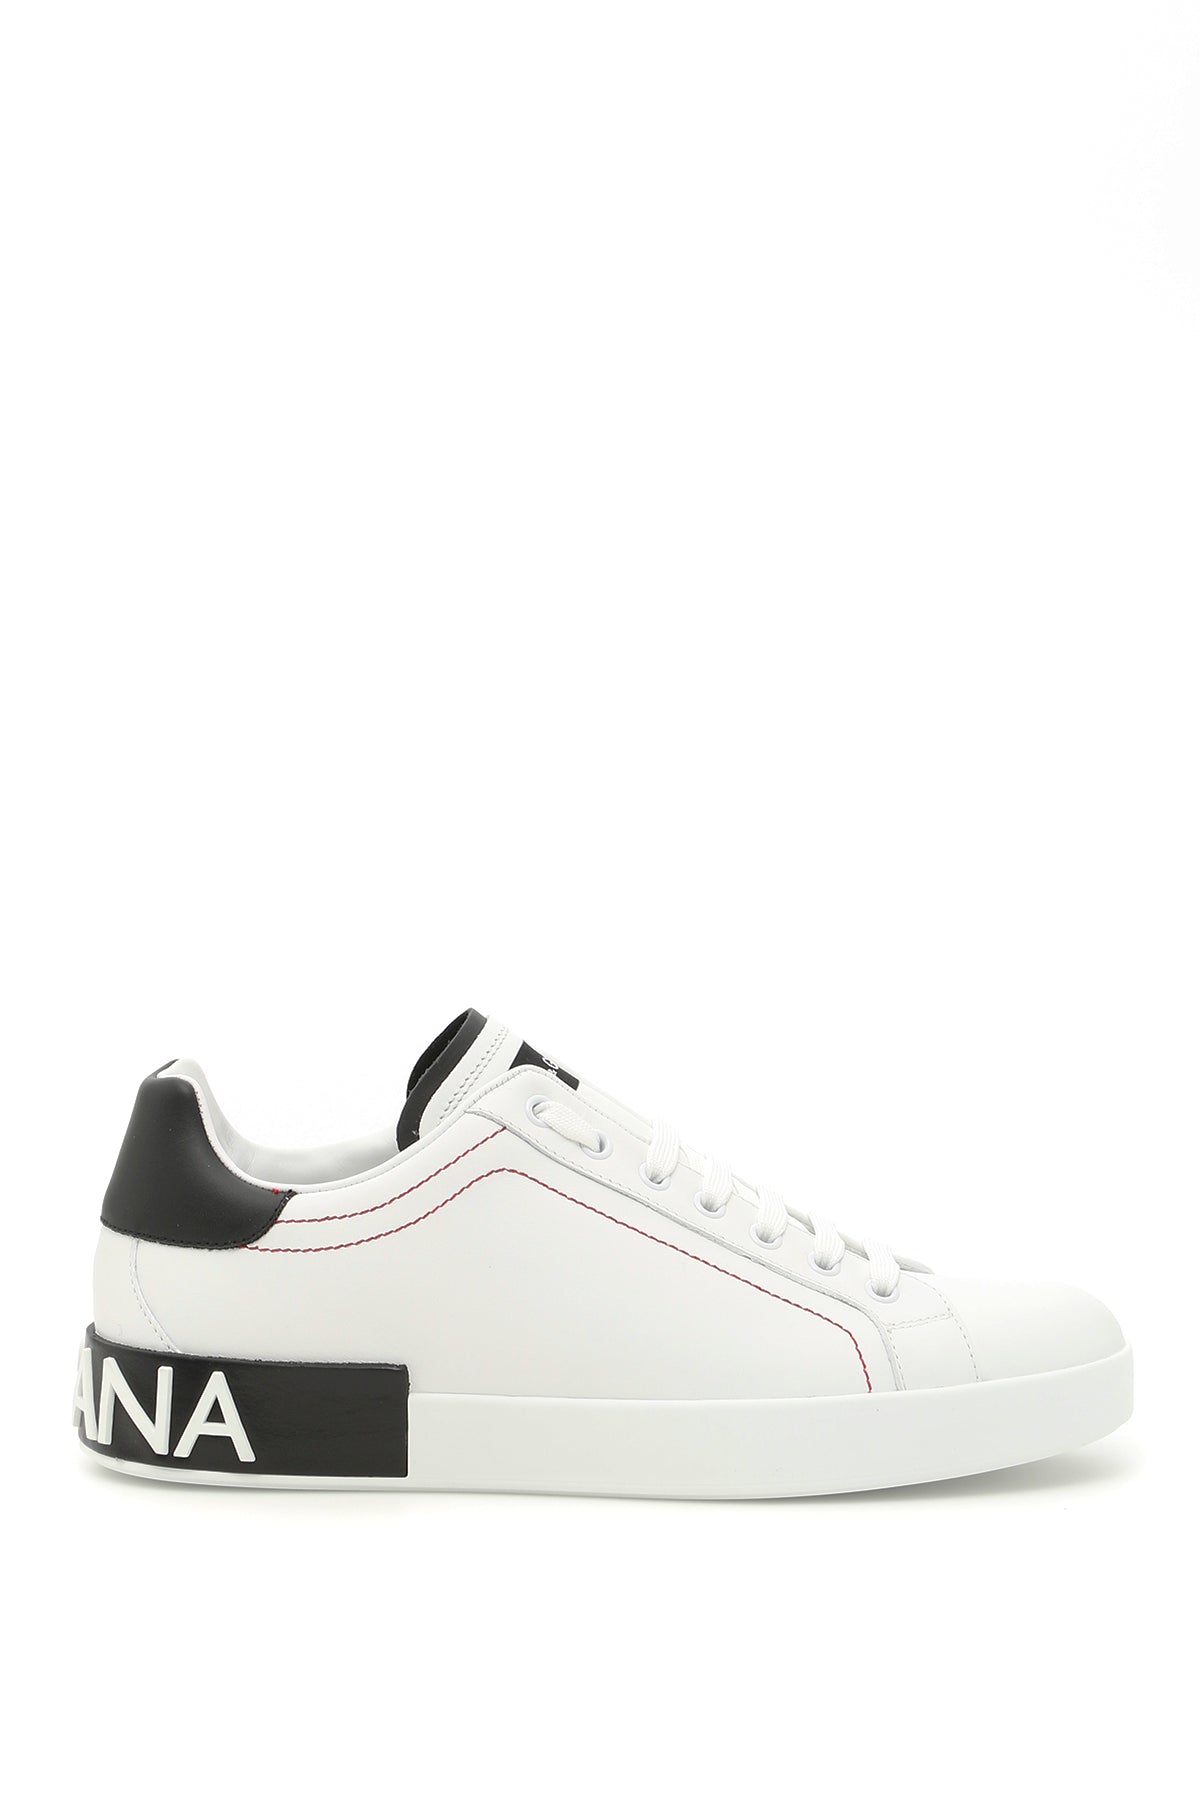 Dolce & Gabbana Portofino Nappa Leather Sneakers   White